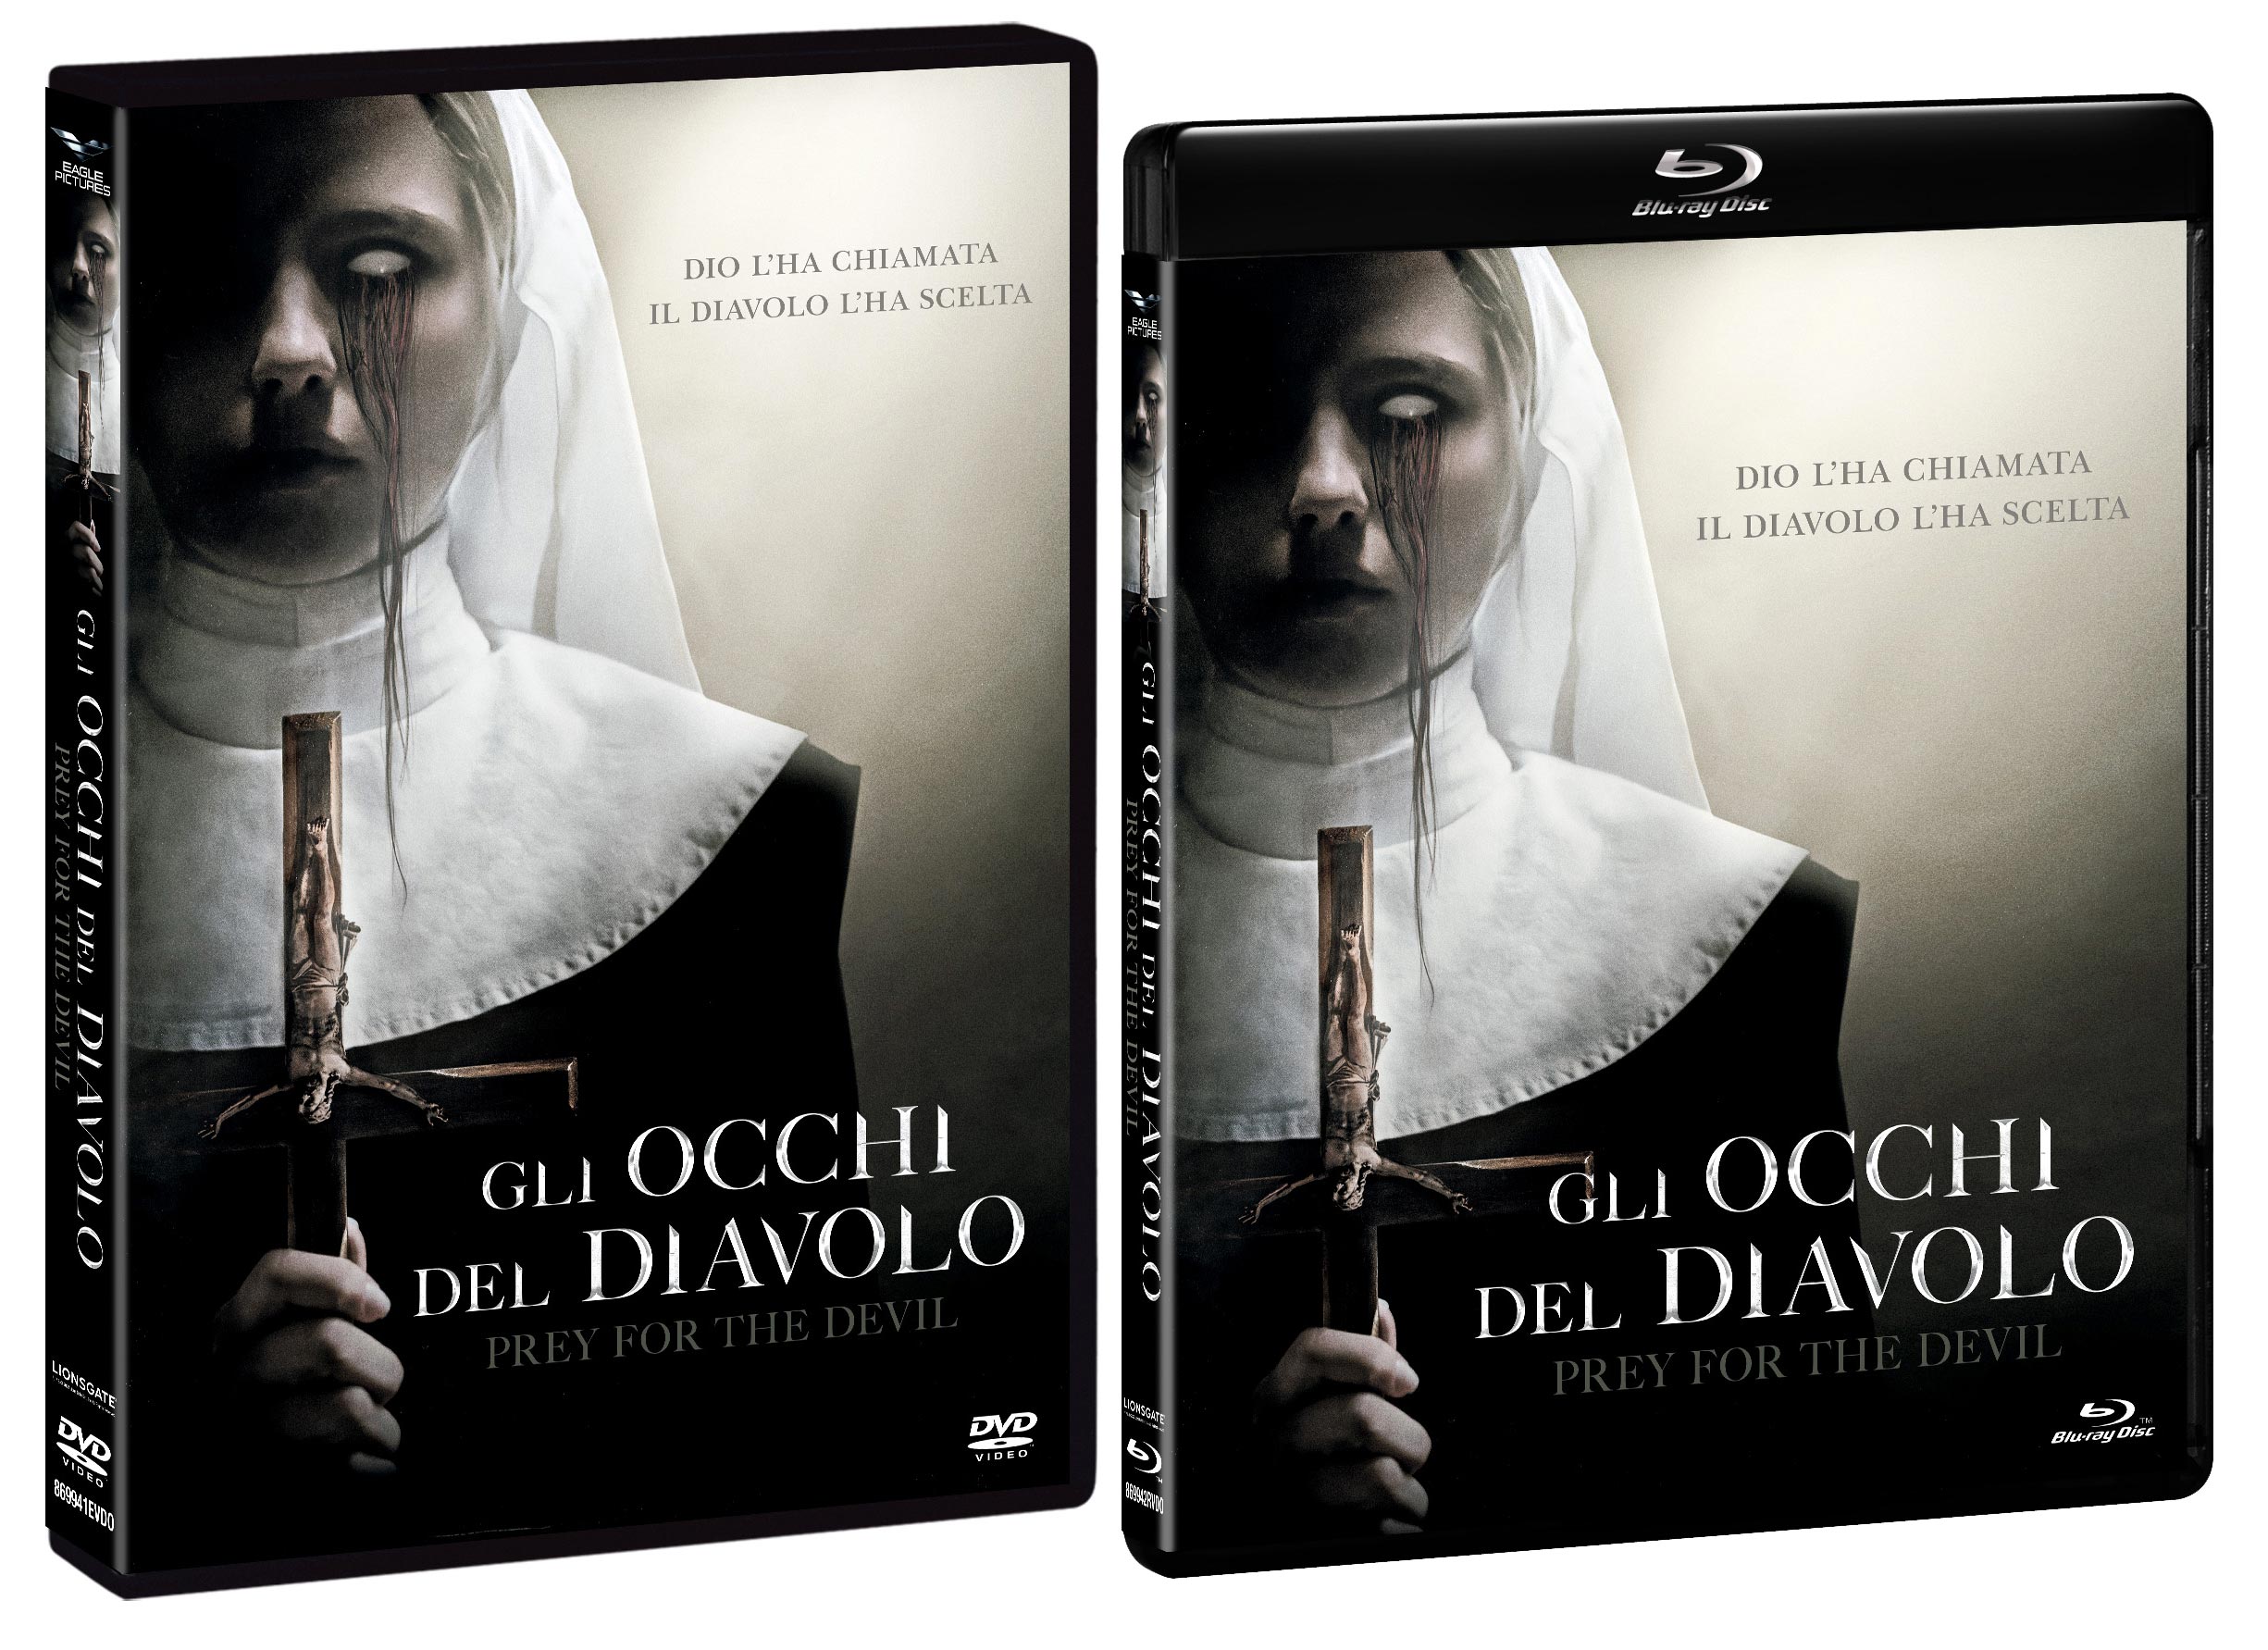 Gli occhi del diavolo in DVD, Blu-ray e 4K.